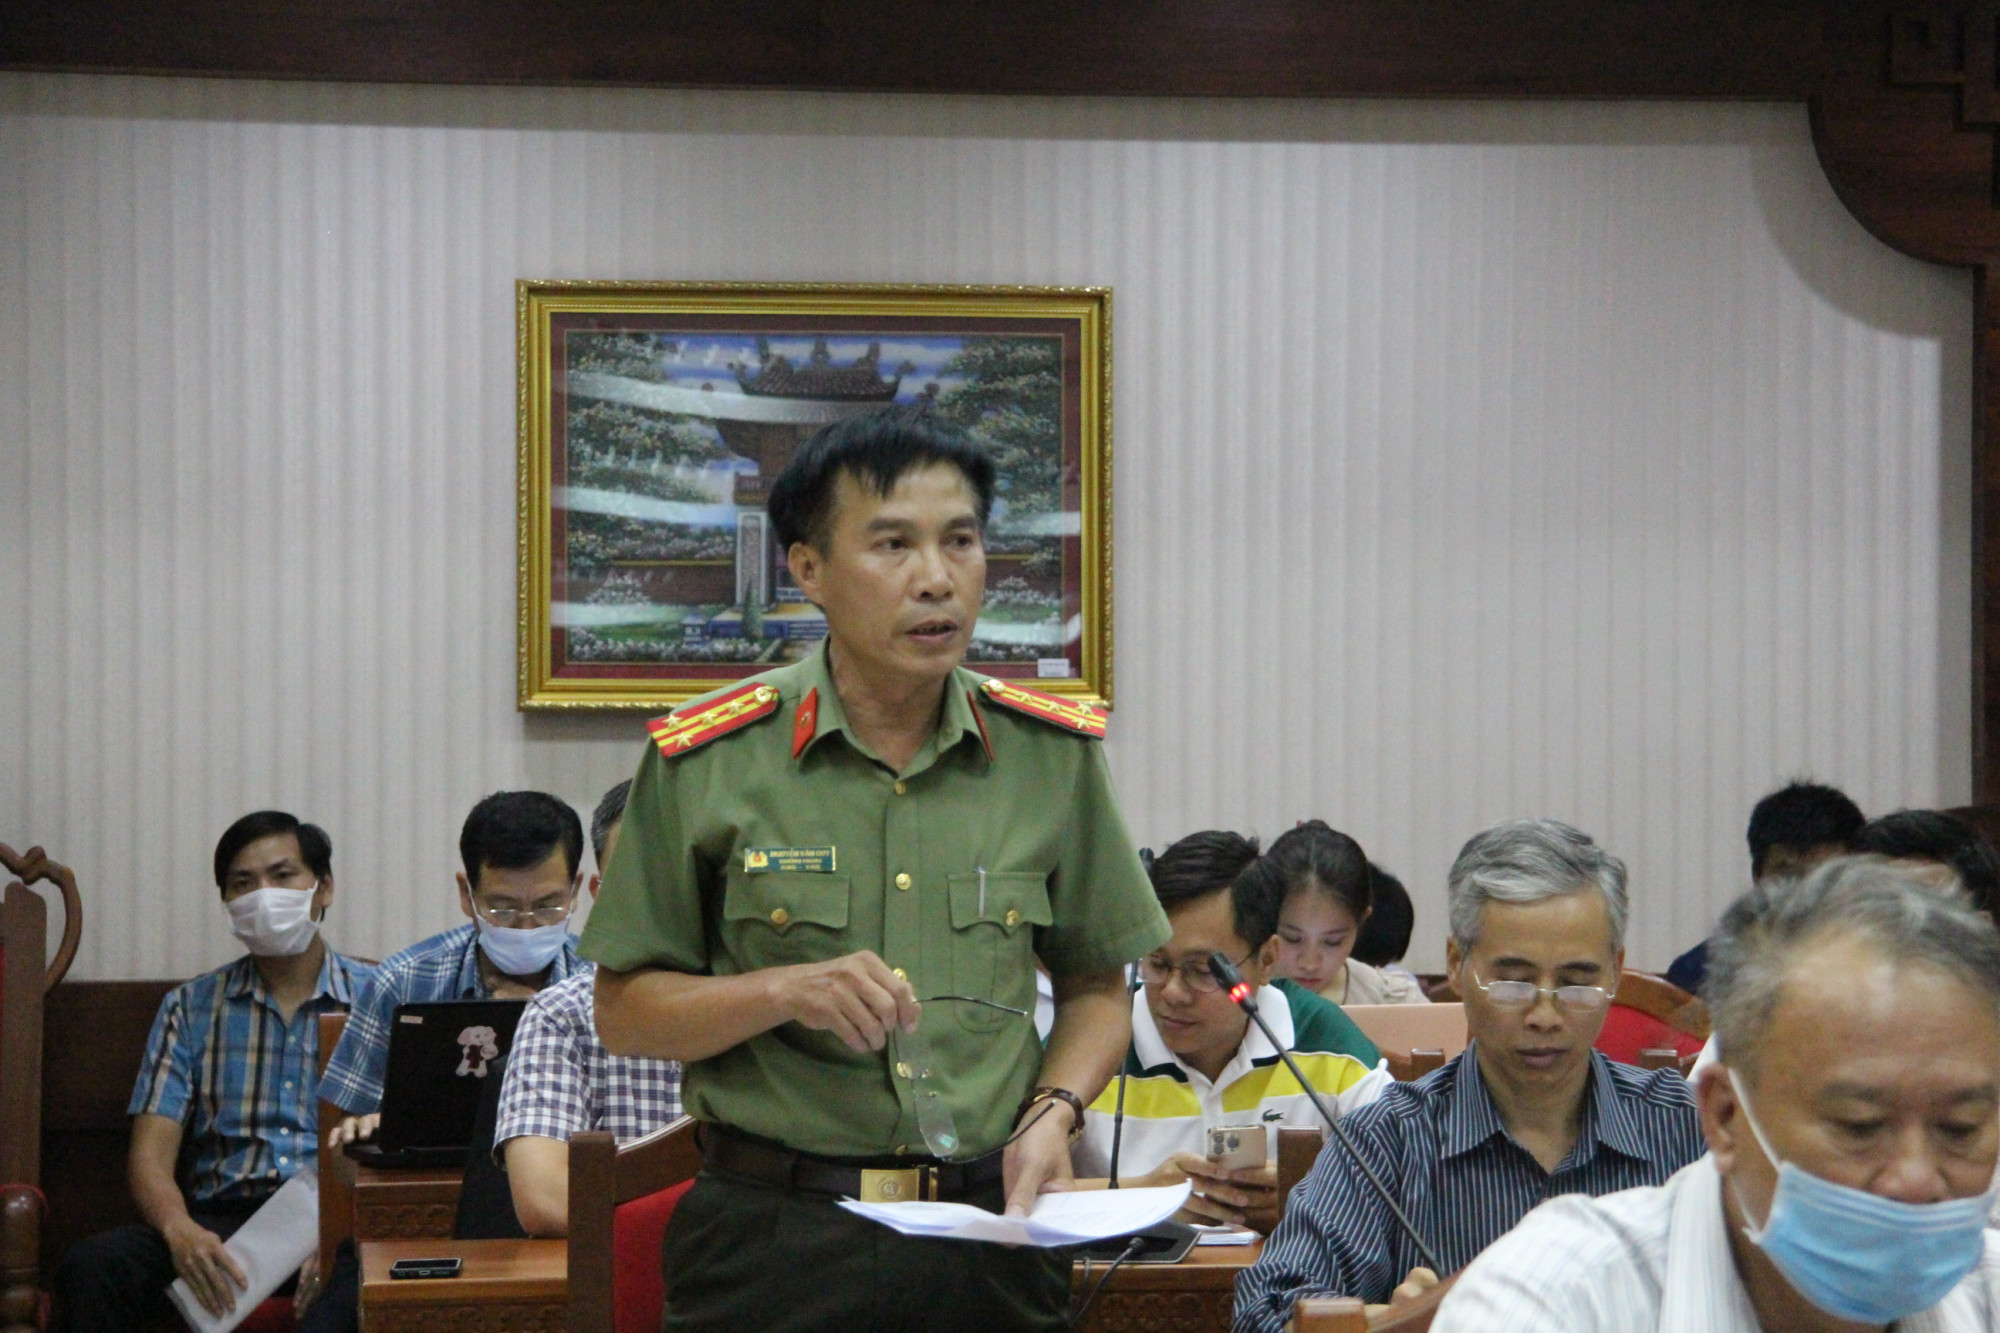 Đại tá Nguyễn Văn Quy, Trưởng phòng Tham mưu Công an tỉnh Đắk Lắk thông tin tại buổi họp báo